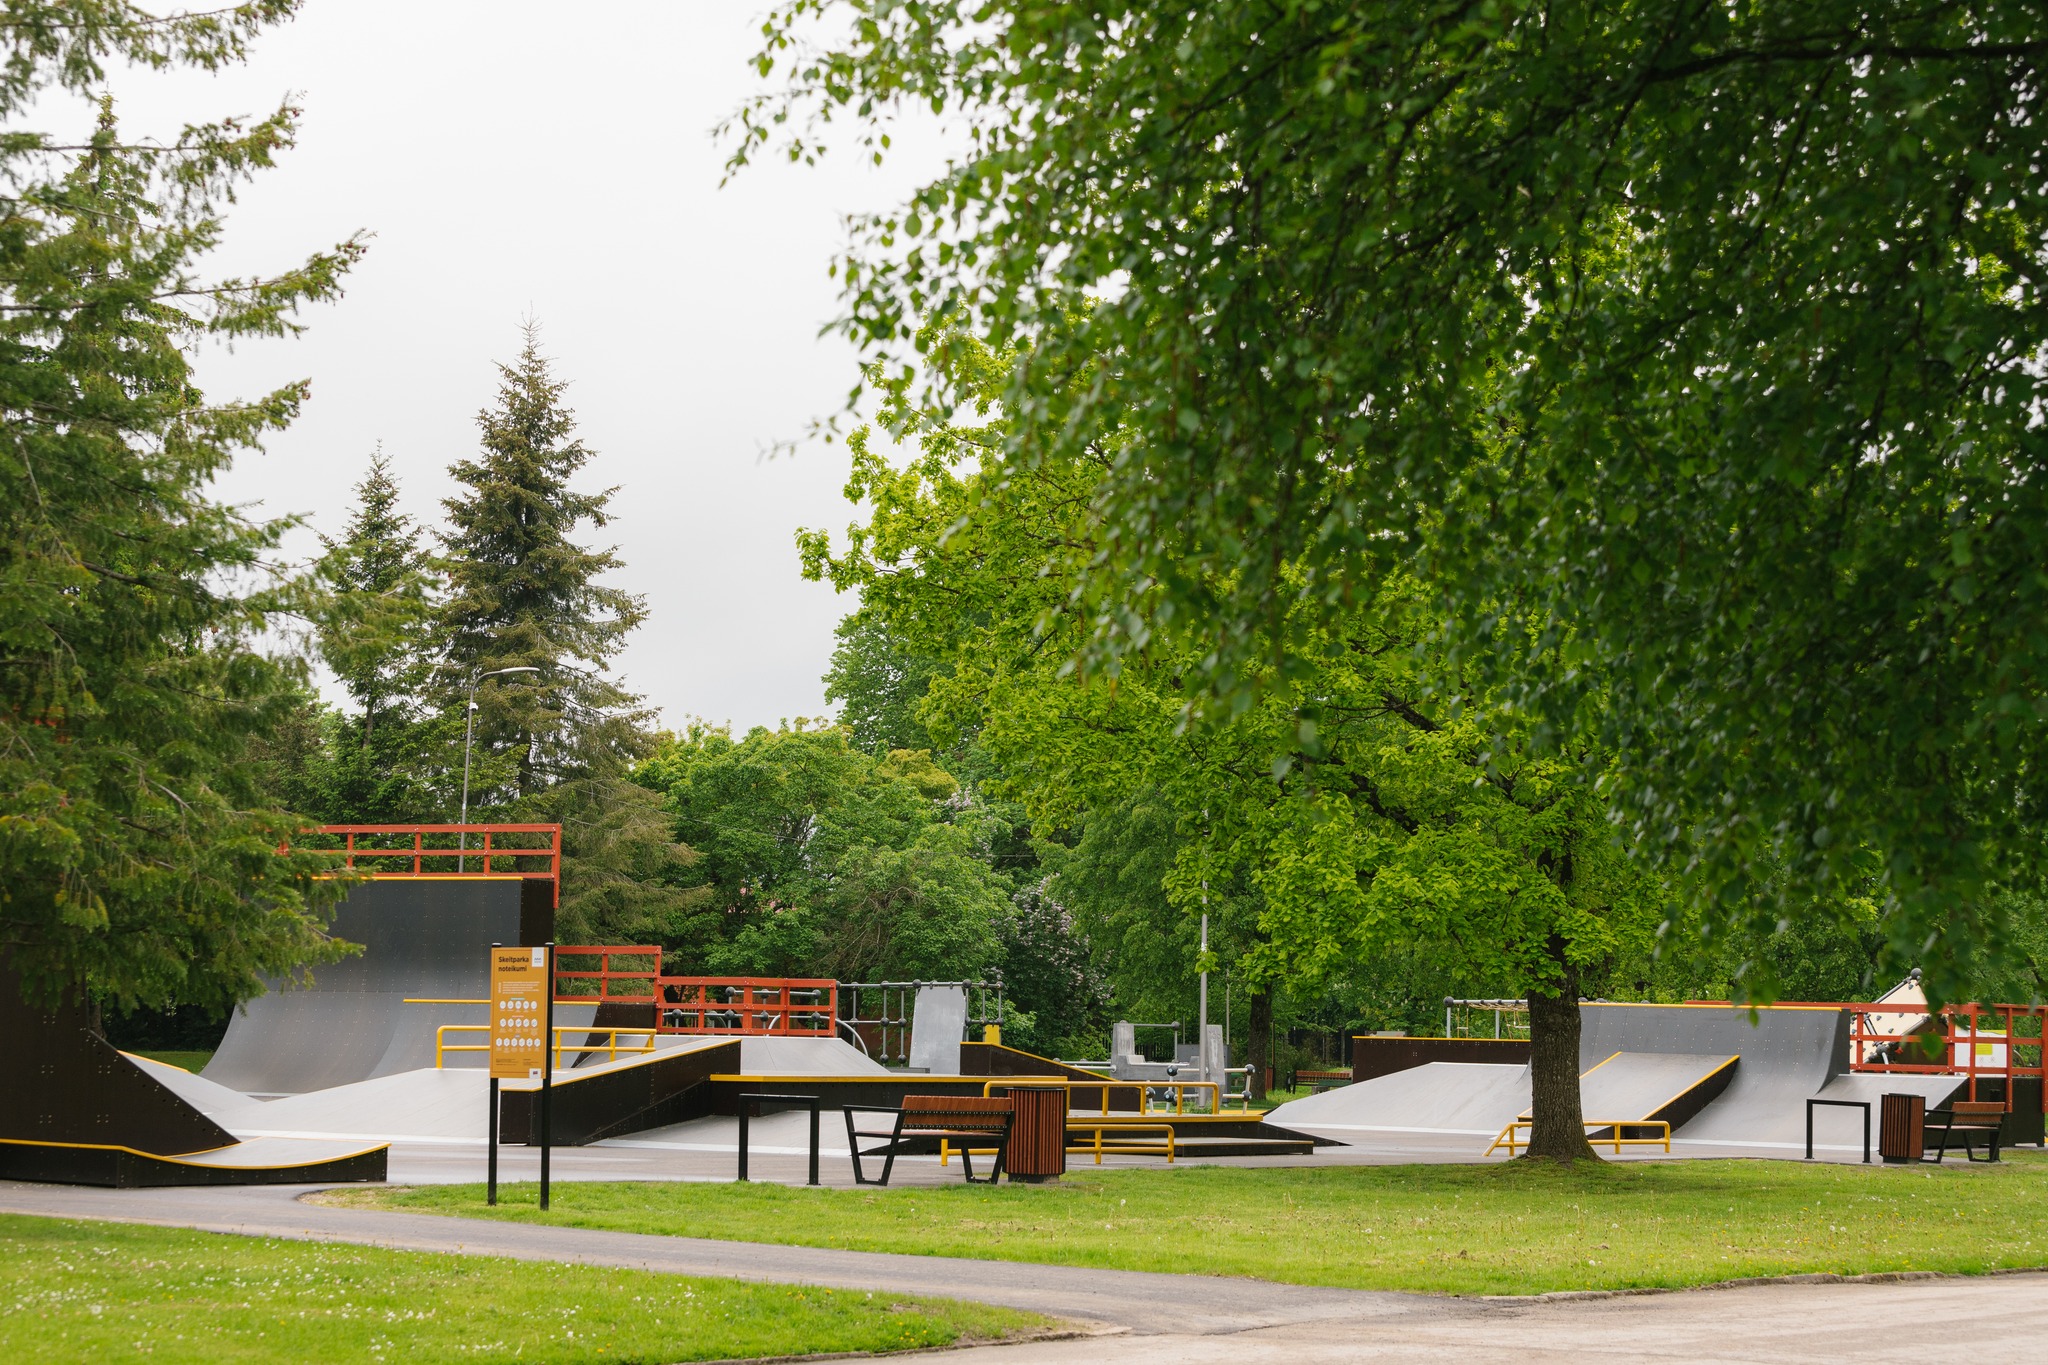 Kuldigos riedučių riedlenčių ir bmx dviračių (skate) parkas